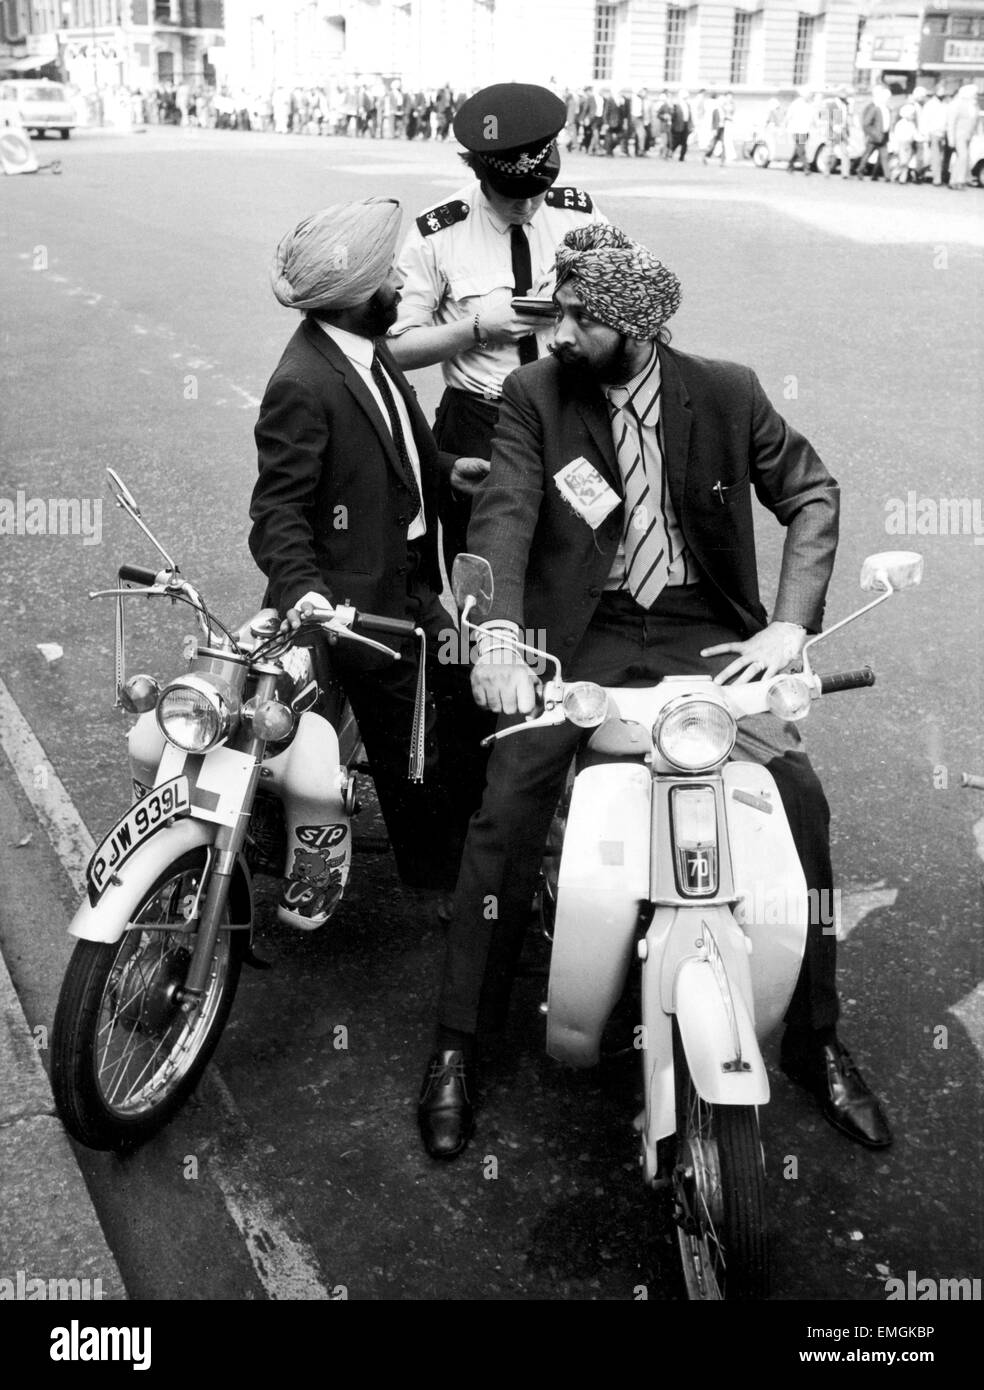 Un policier réservation deux motocyclistes sikhs ne portaient pas de casque. 10 Septembre 1973 Banque D'Images